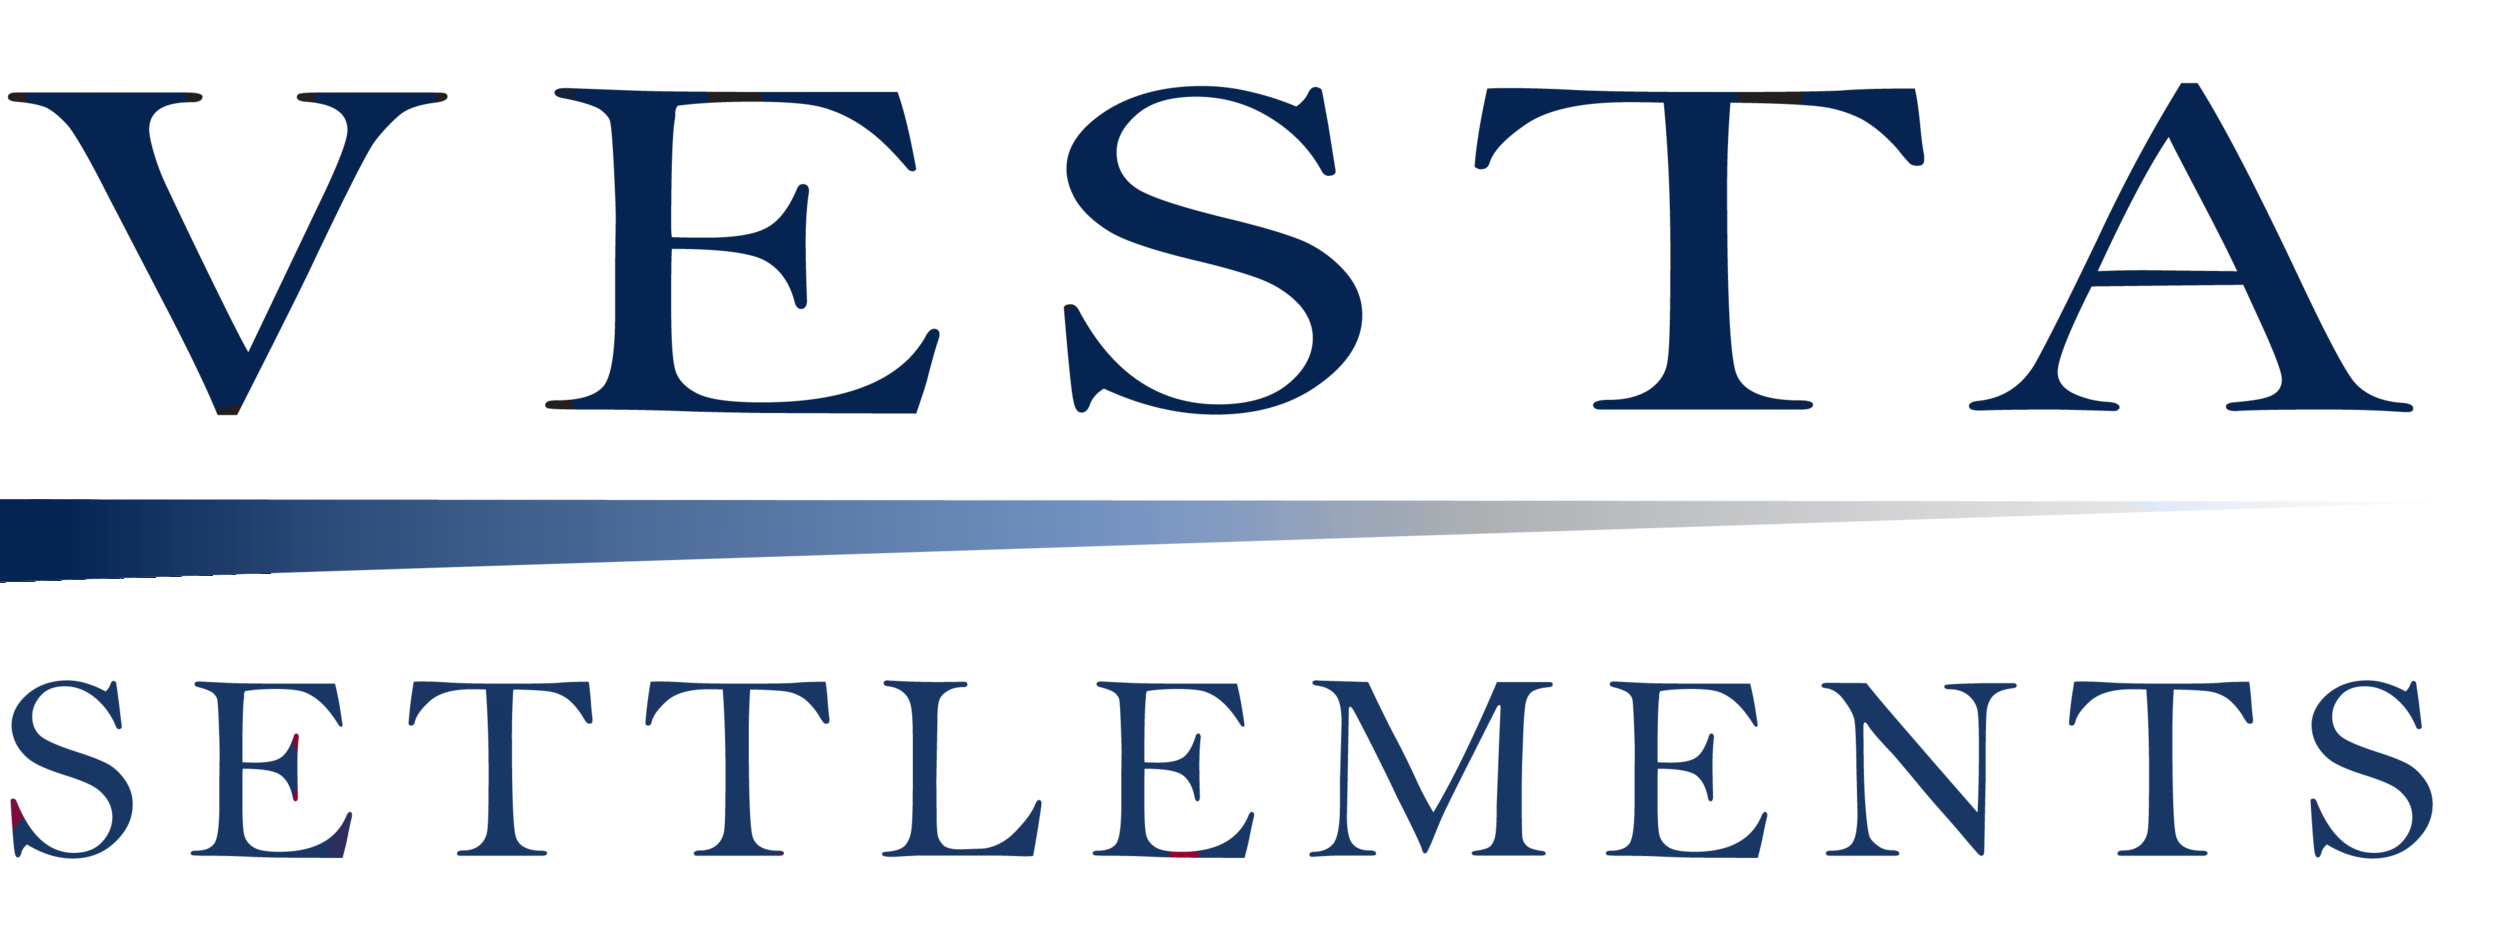 Vest Settlements